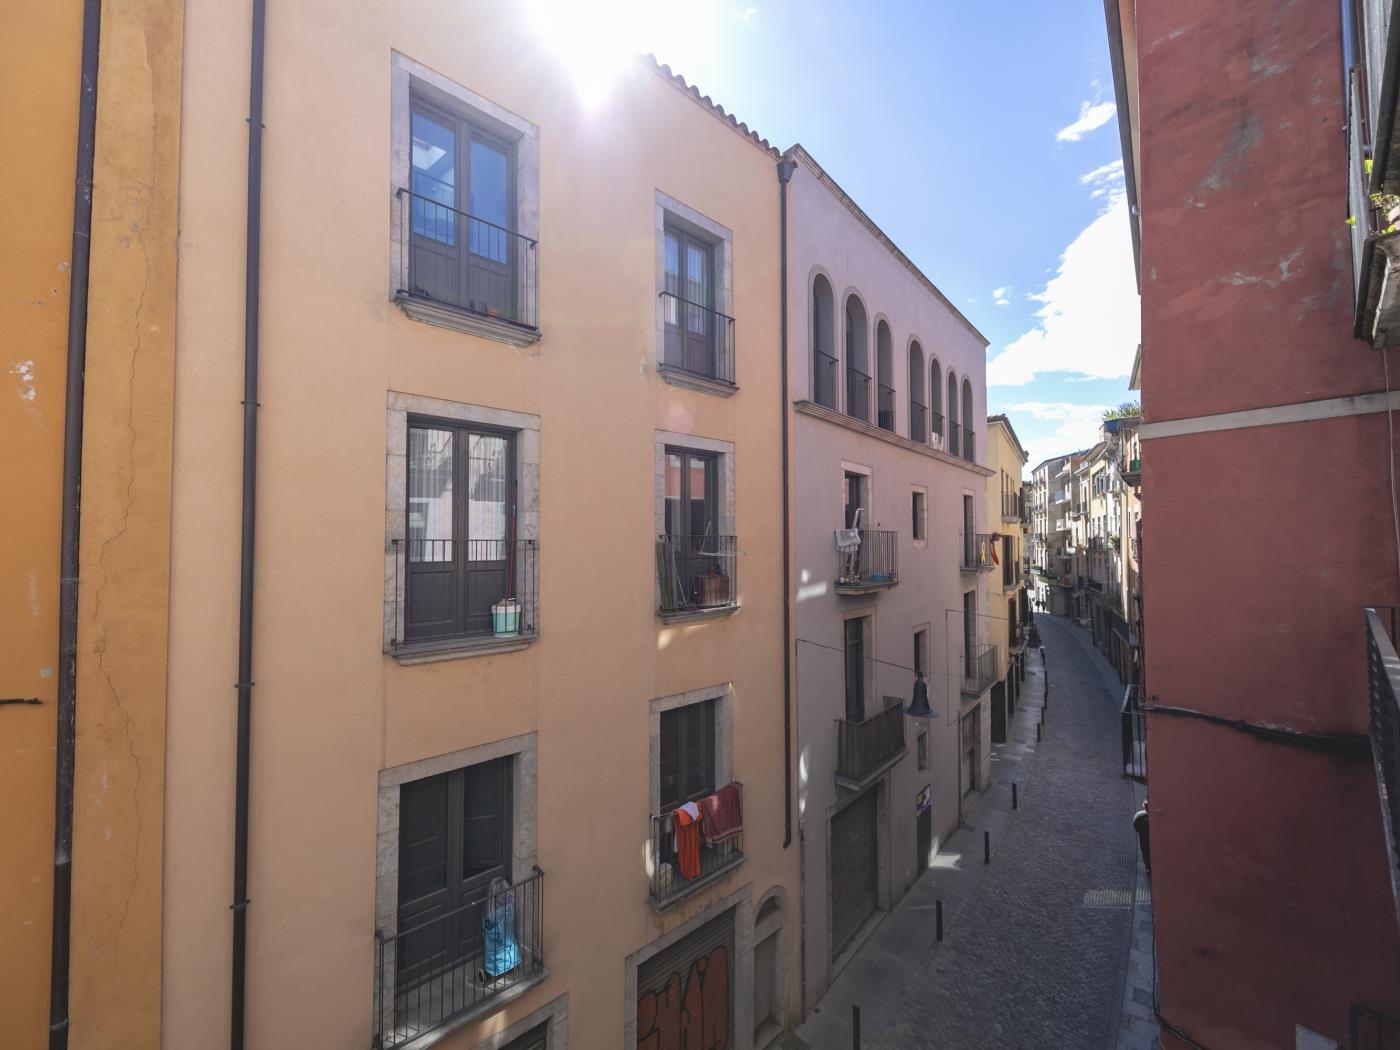 Sunset - Holiday apartment in Girona | Bravissimo in Girona